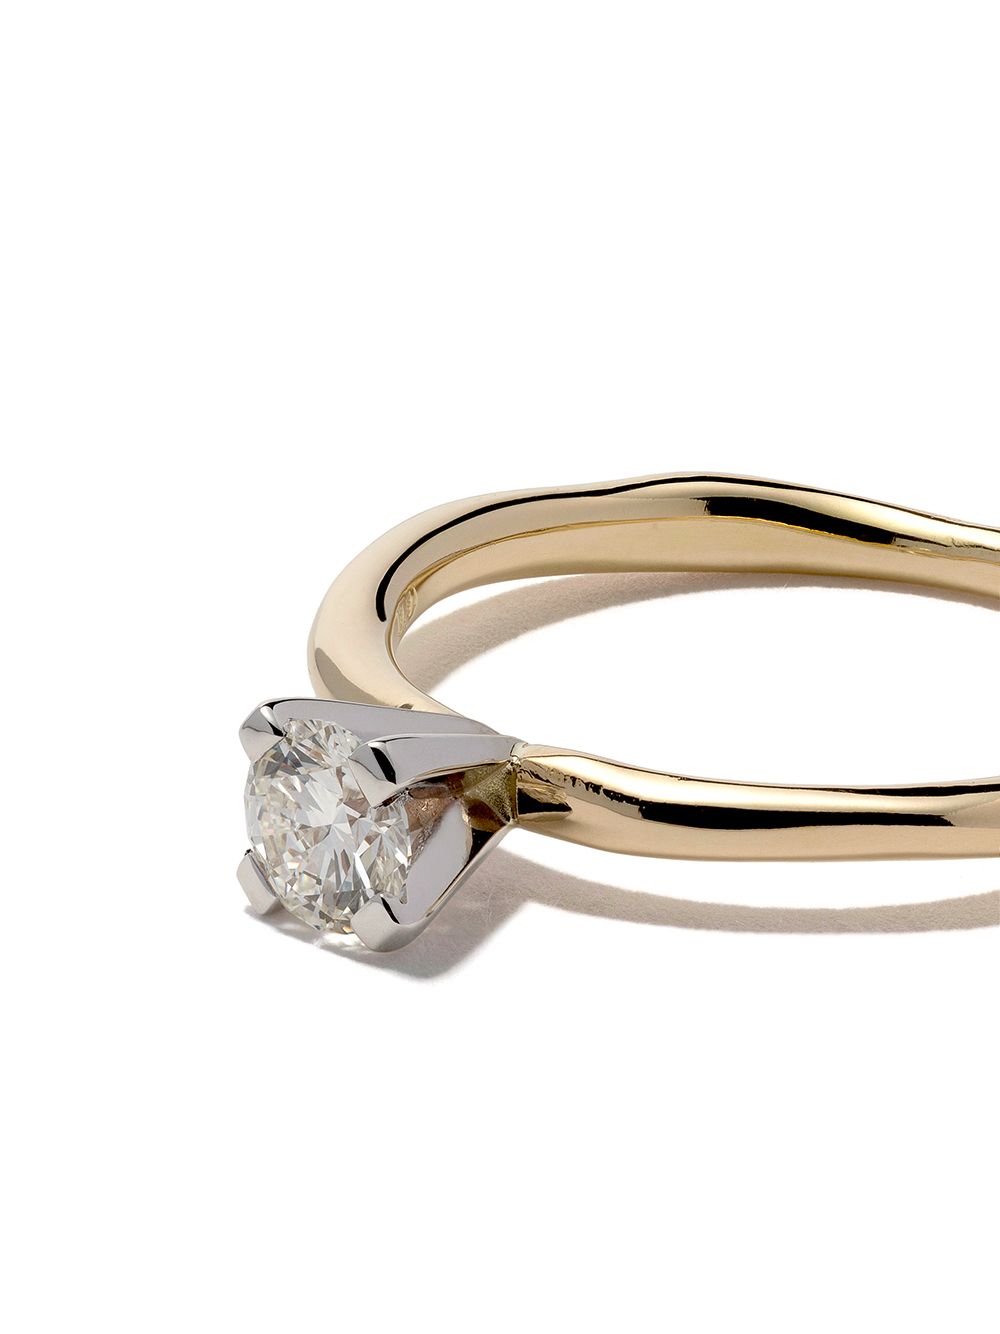 WOUTERS & HENDRIX GOLD DIAMOND 18K金钻石镶嵌戒指 - YELLOW GOLD/WHITE GOLD